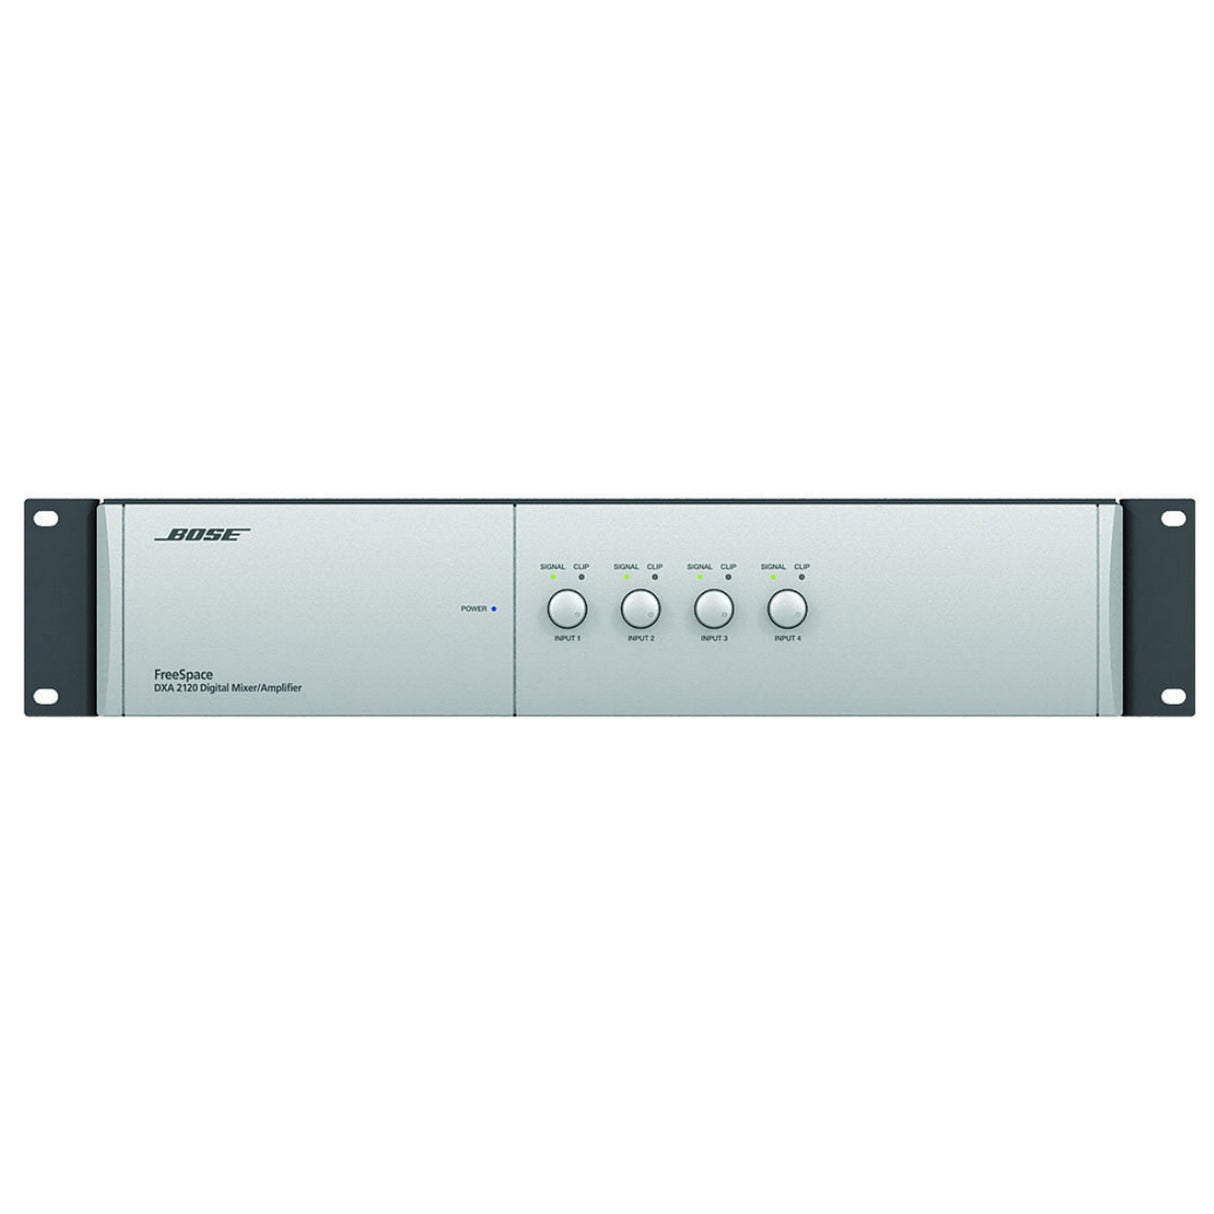 Bose FreeSpace DXA 210 Digital Mixer/Amplifier